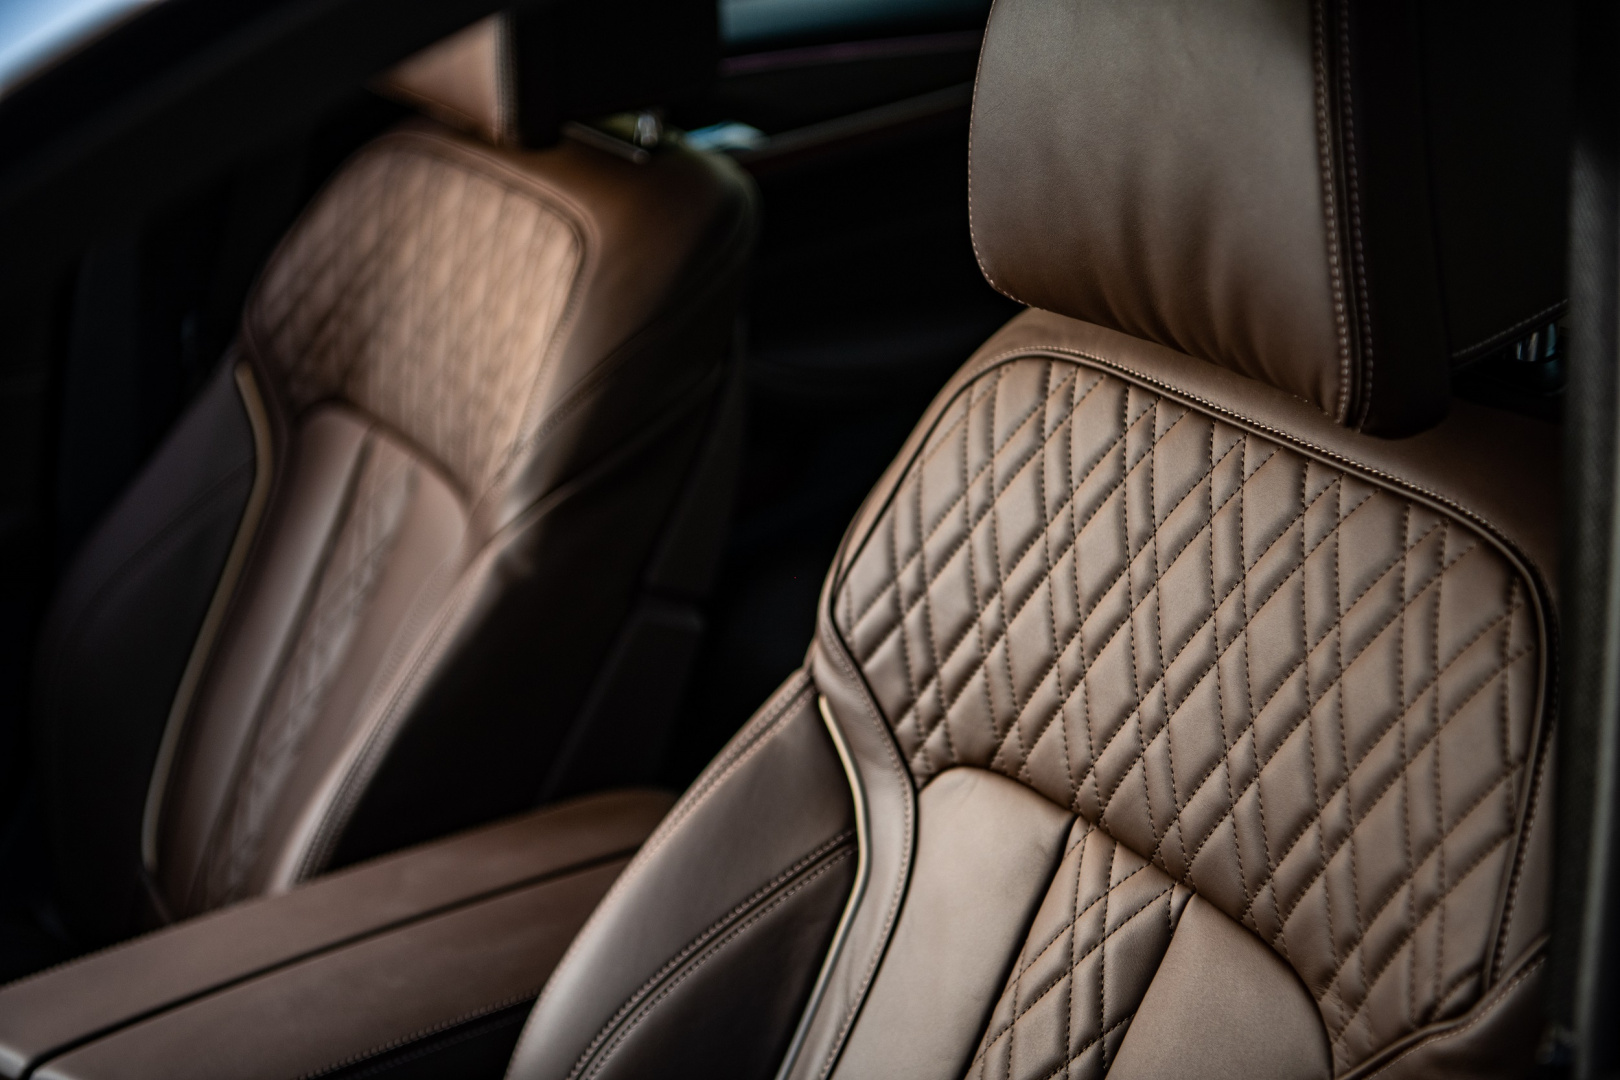 SMALL_[新聞照片三] 全新BMW 5系列以細緻柔軟的真皮內裝與舒適的乘坐體驗獲得專業評審肯定